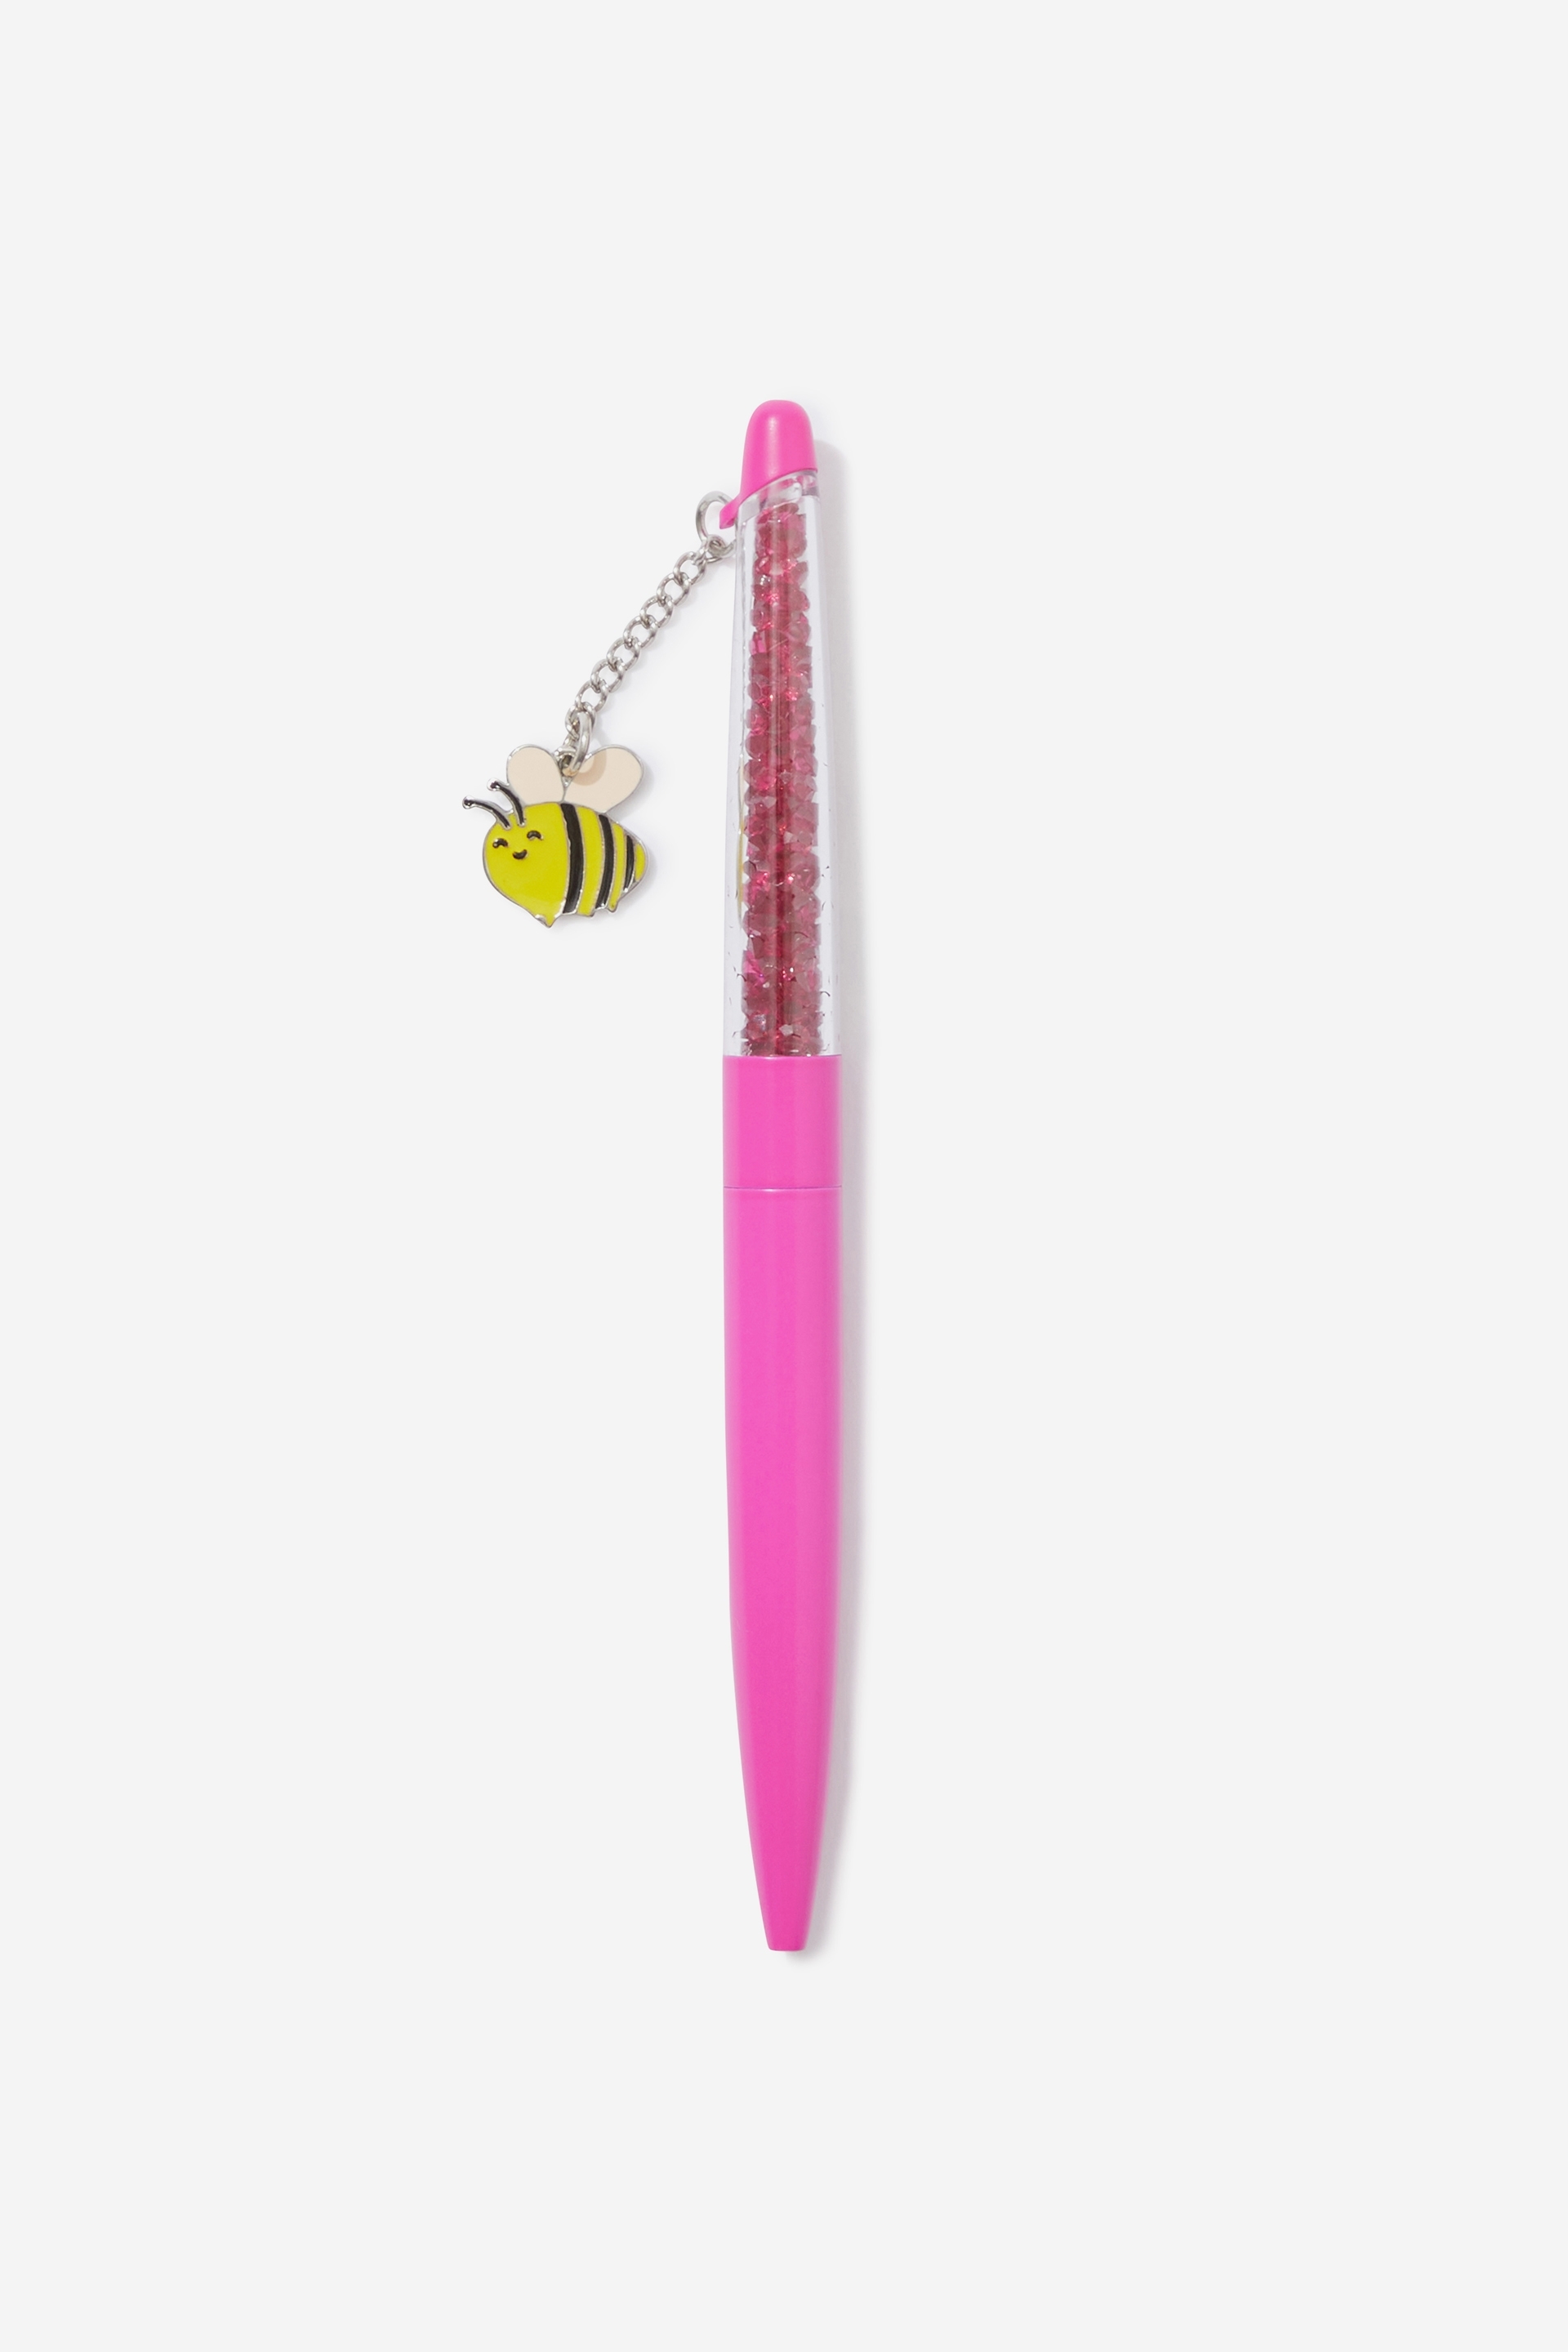 Typo - Charm Pen - Bee